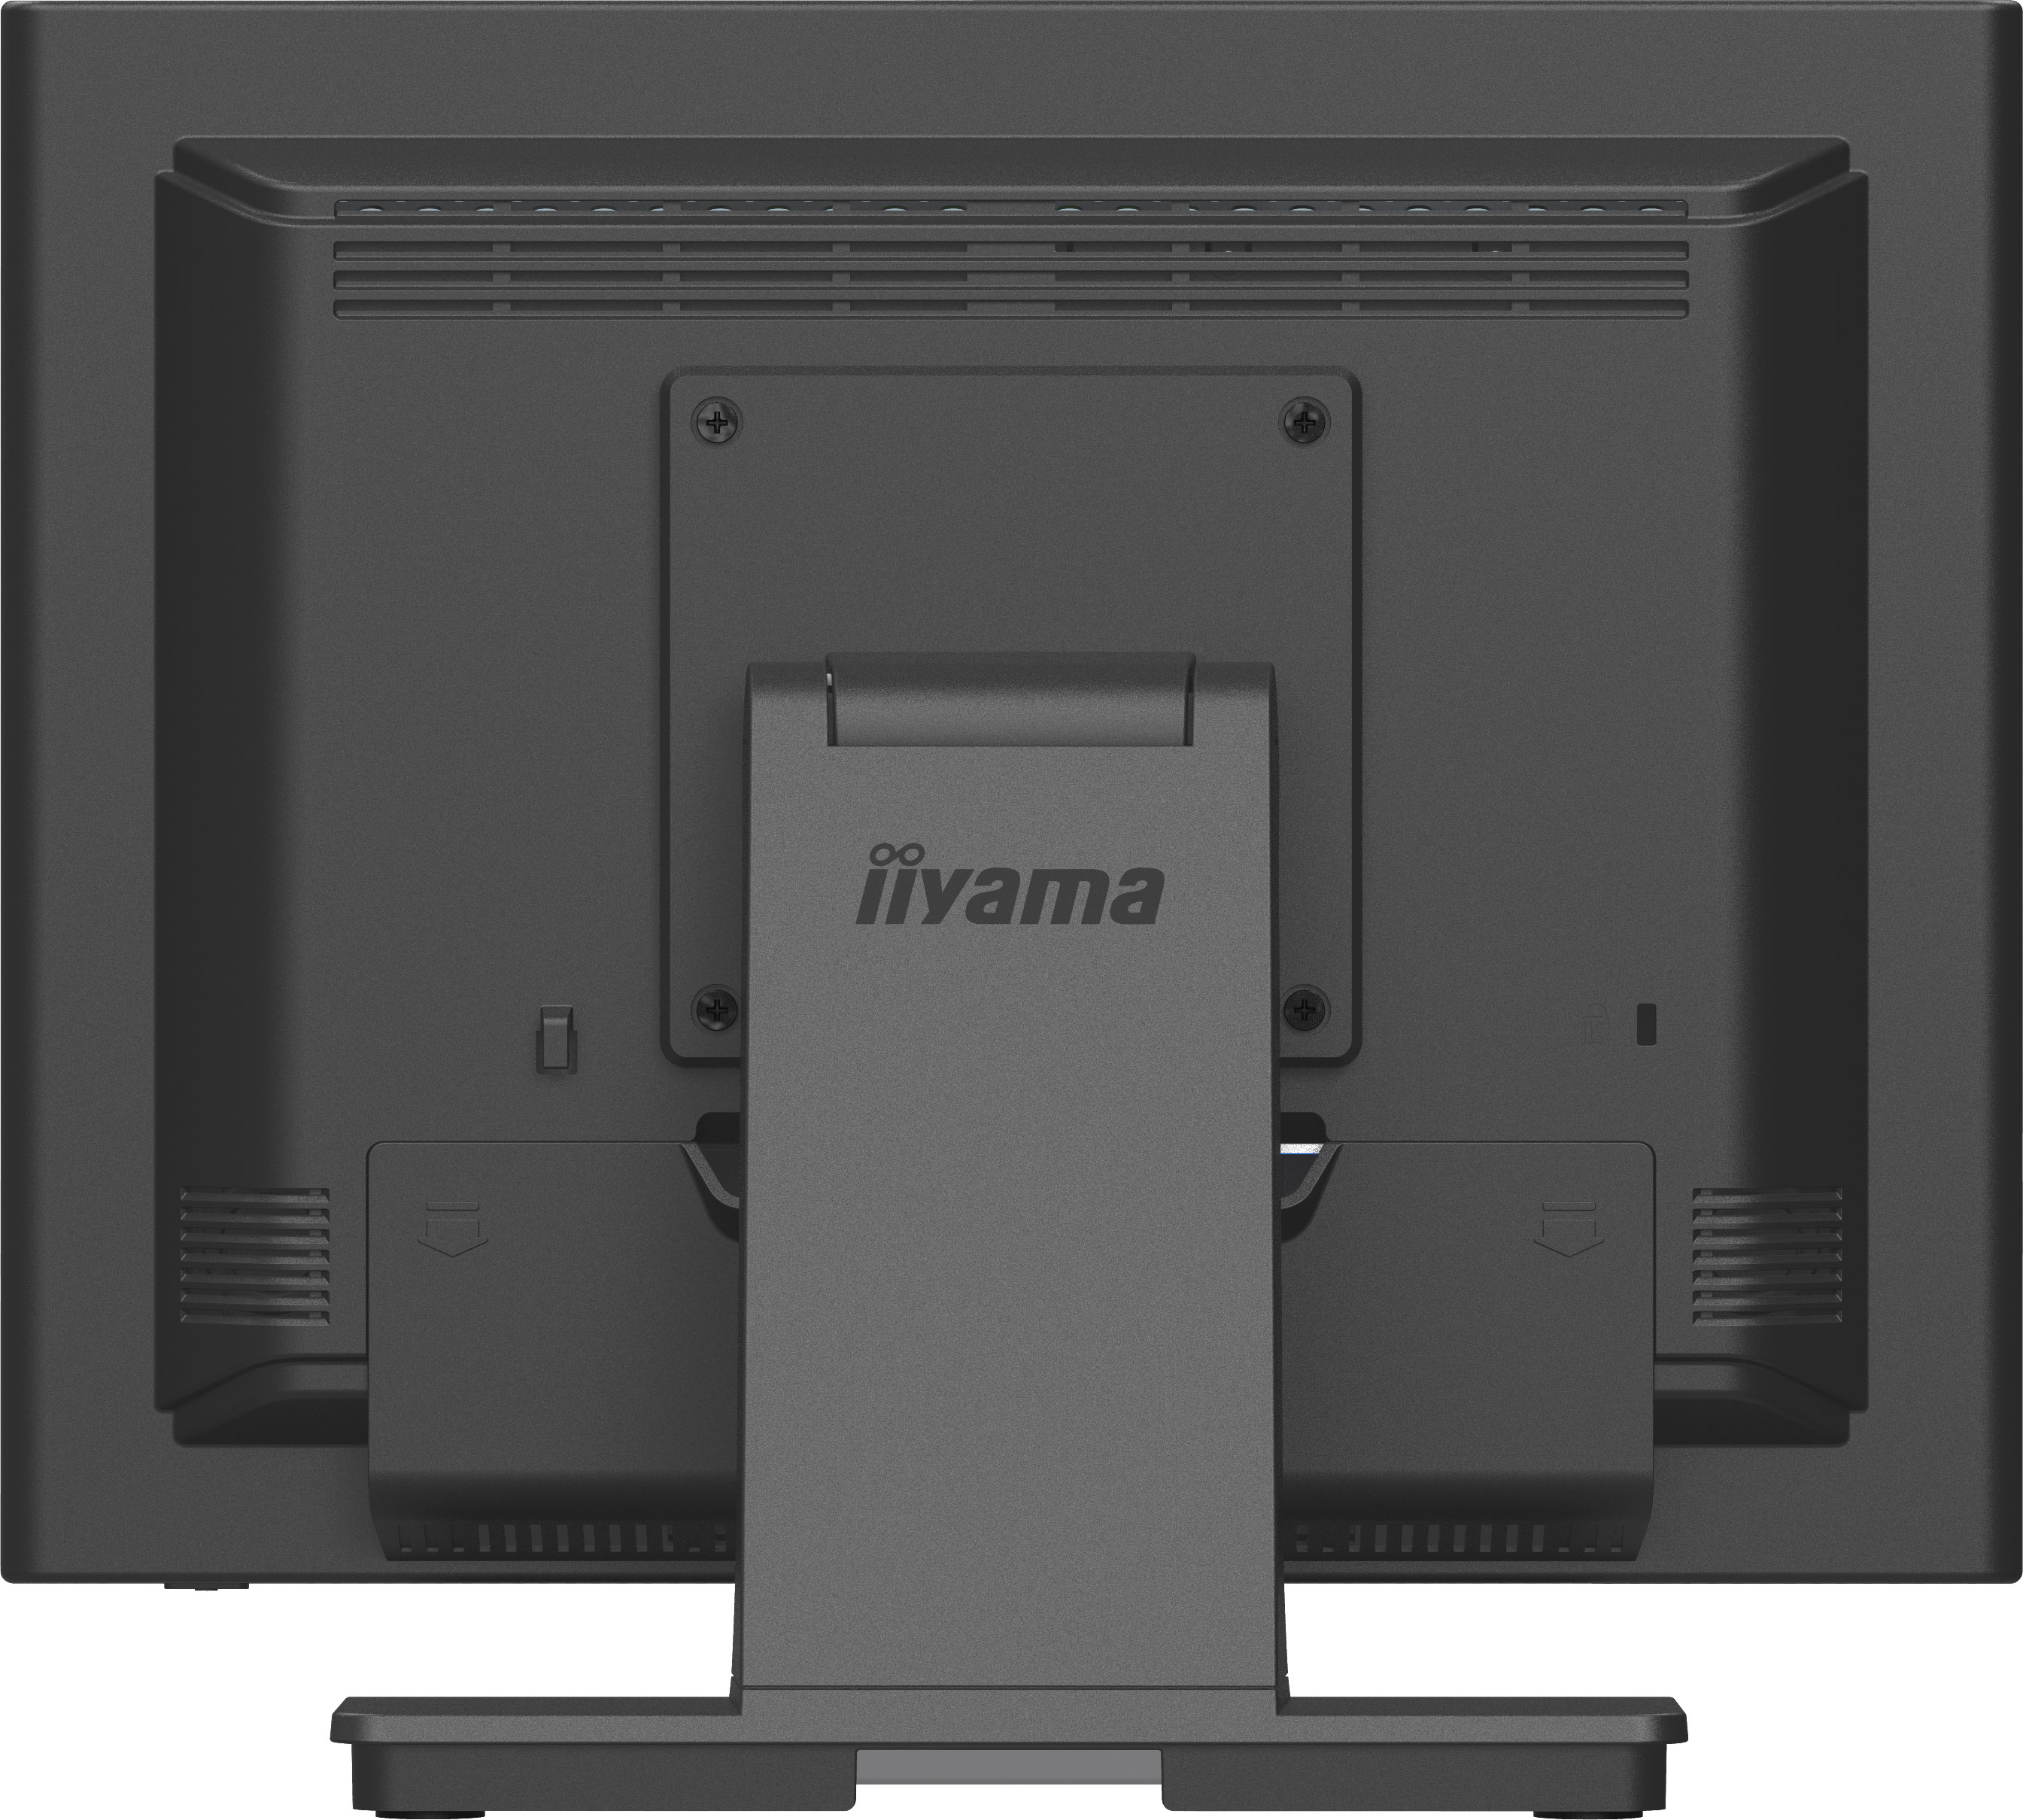 15" iiyama T1531SR-B1S:VA, 1024x768, DP, HDMI 